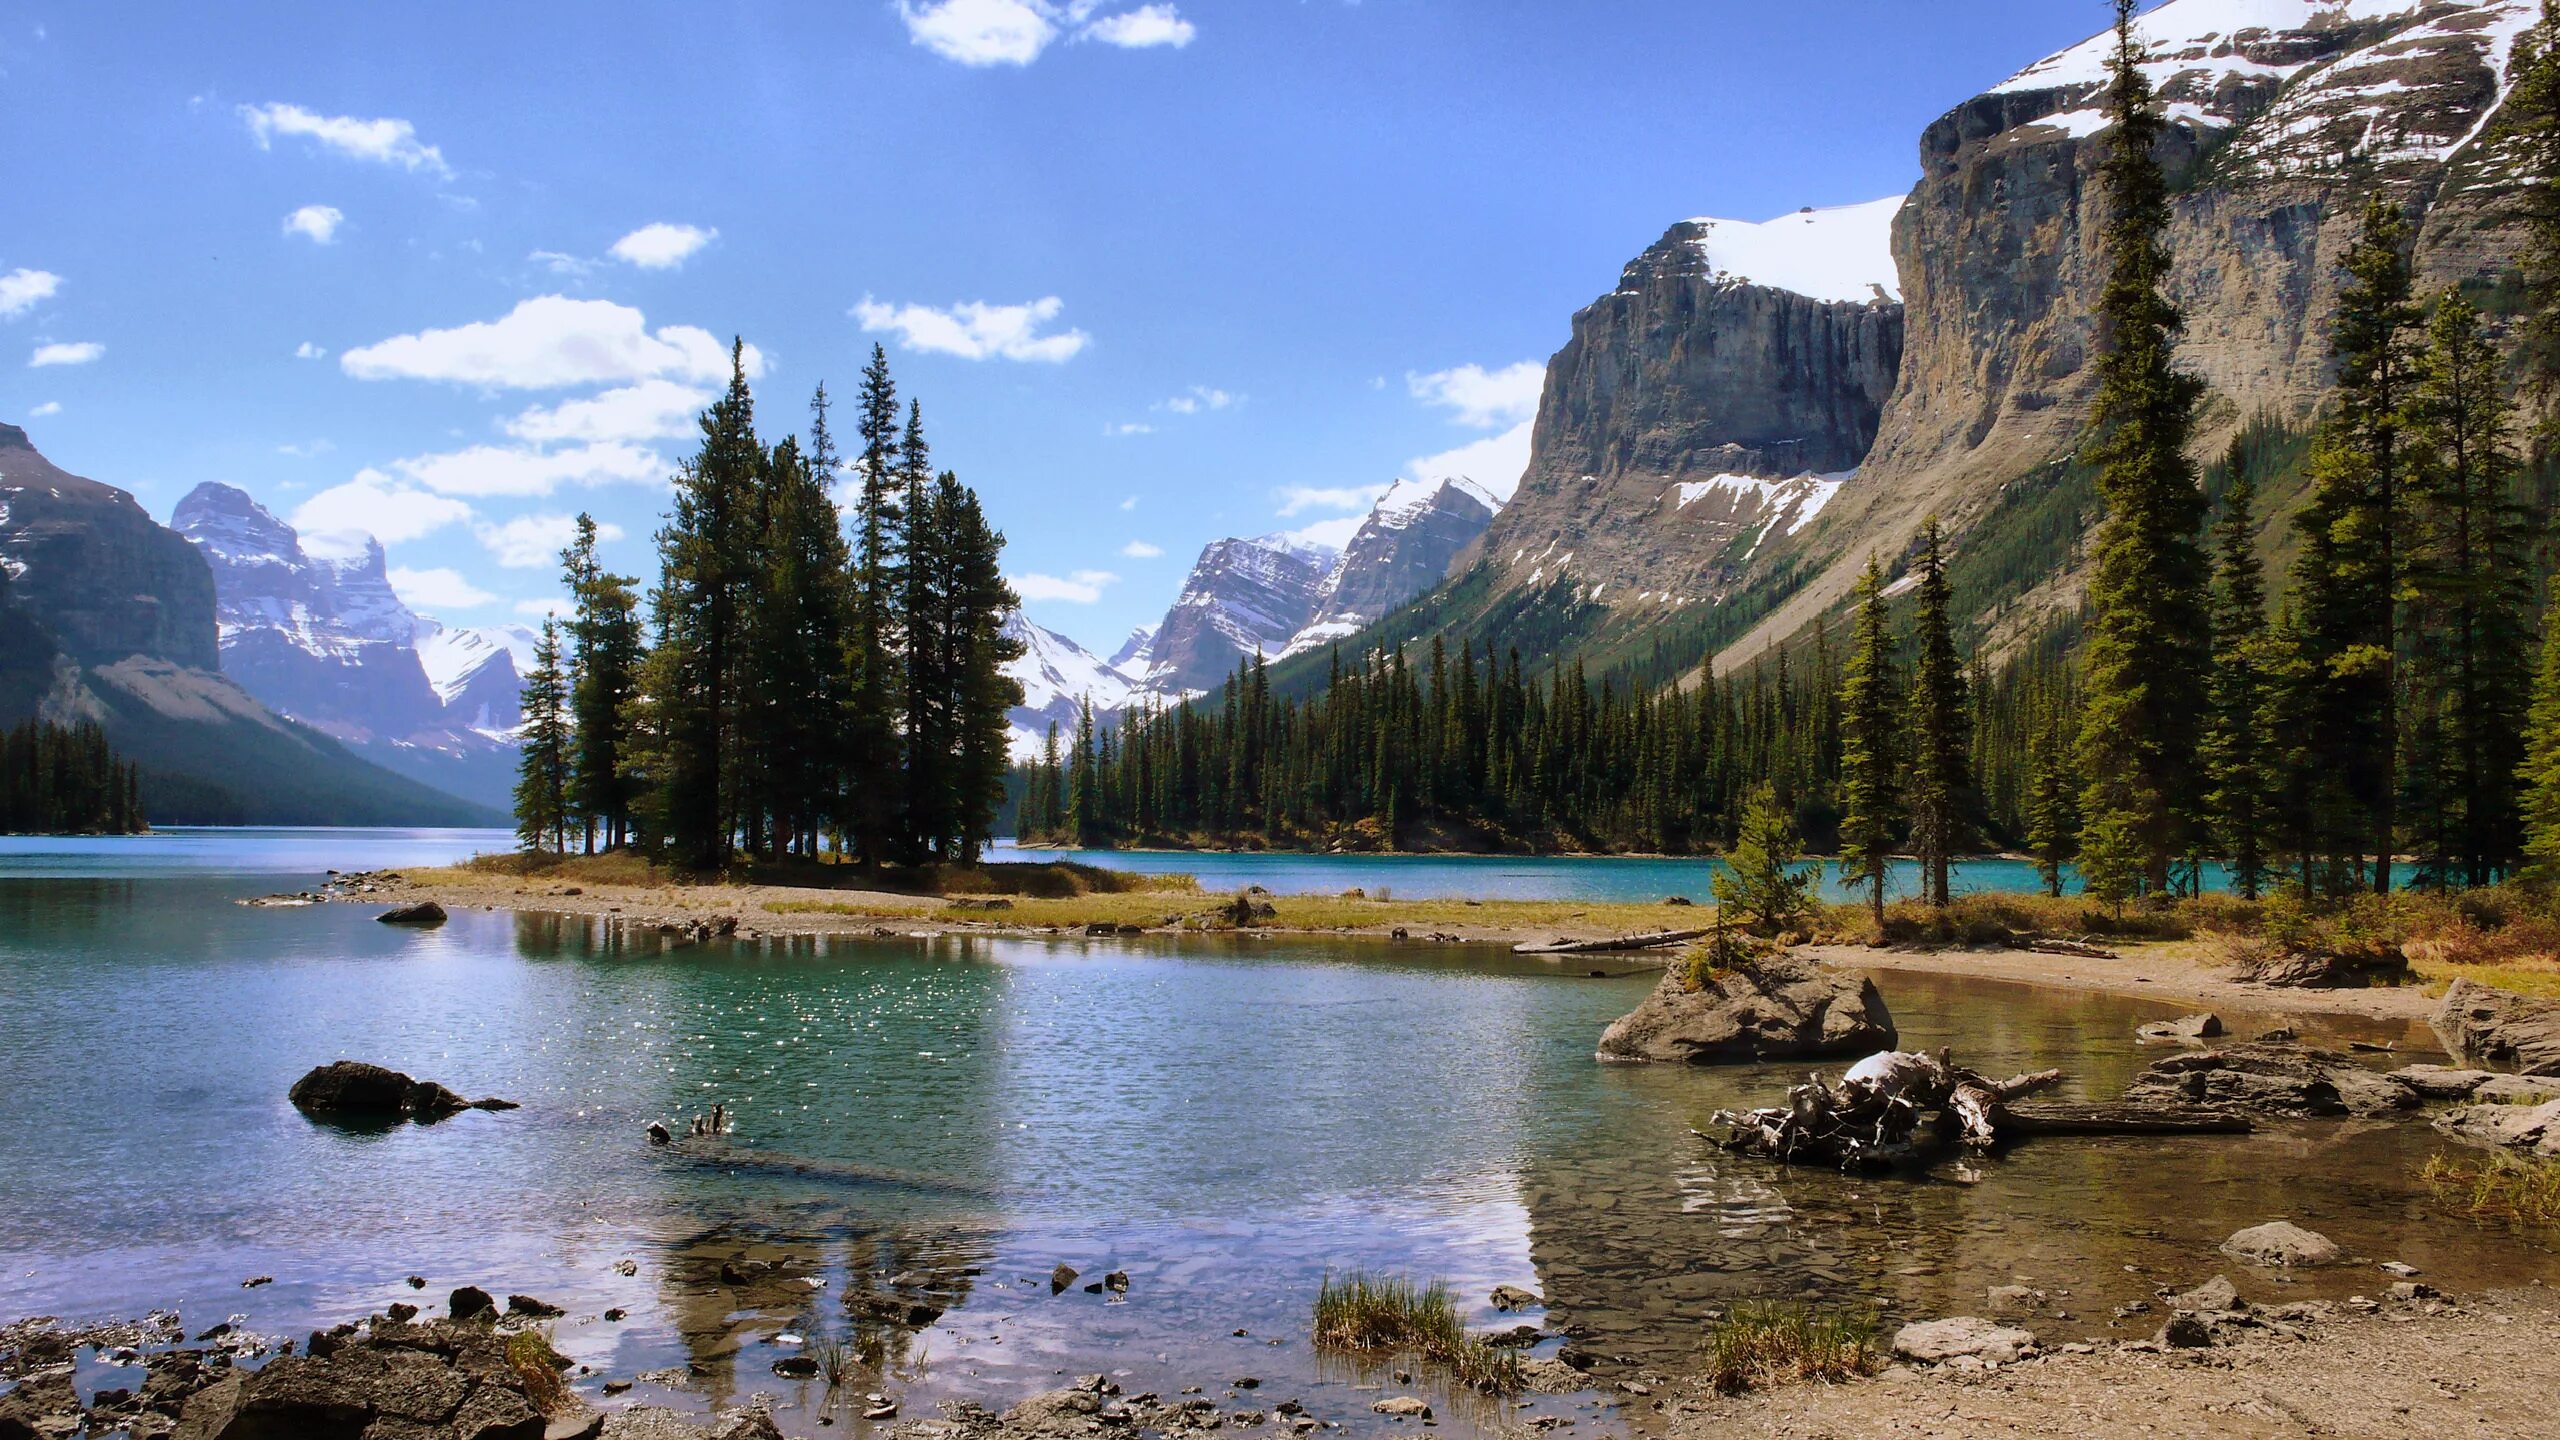 Картинки рабочий стол качество. Озеро Морейн в Канаде. Национальный парк Джаспер, Альберта, Канада. Национальный парк Ергаки. Гора Робсон, Канада.